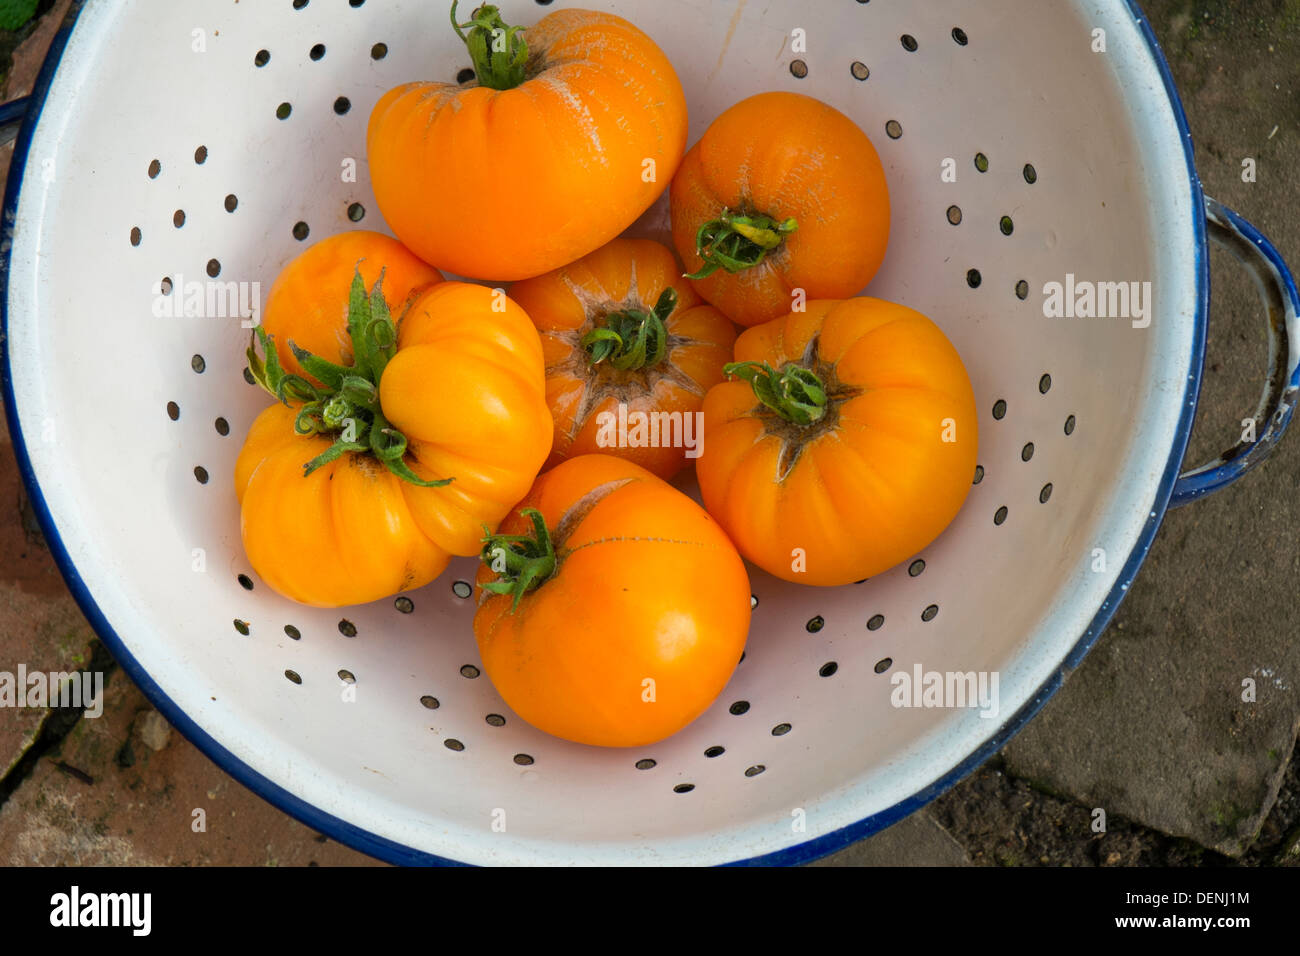 Los tomates de patrimonio, 'veraniego' de sidra, frutos maduros listos para la cocina. Foto de stock